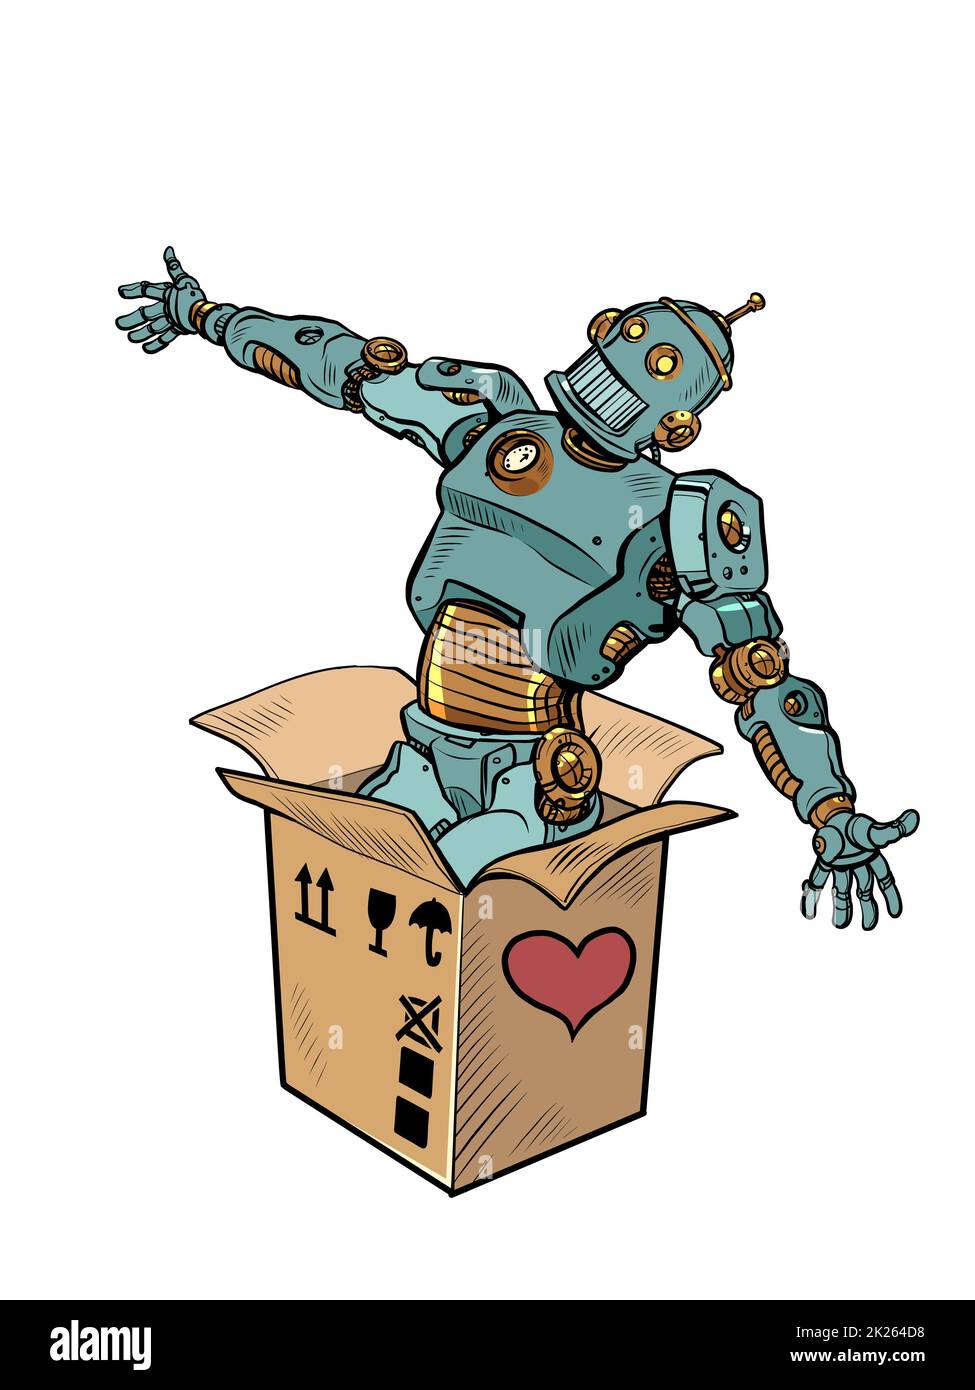 robot meccanico giocattolo scatola san valentino sorpresa saluto, amore romanticismo isolato su uno sfondo bianco Foto Stock